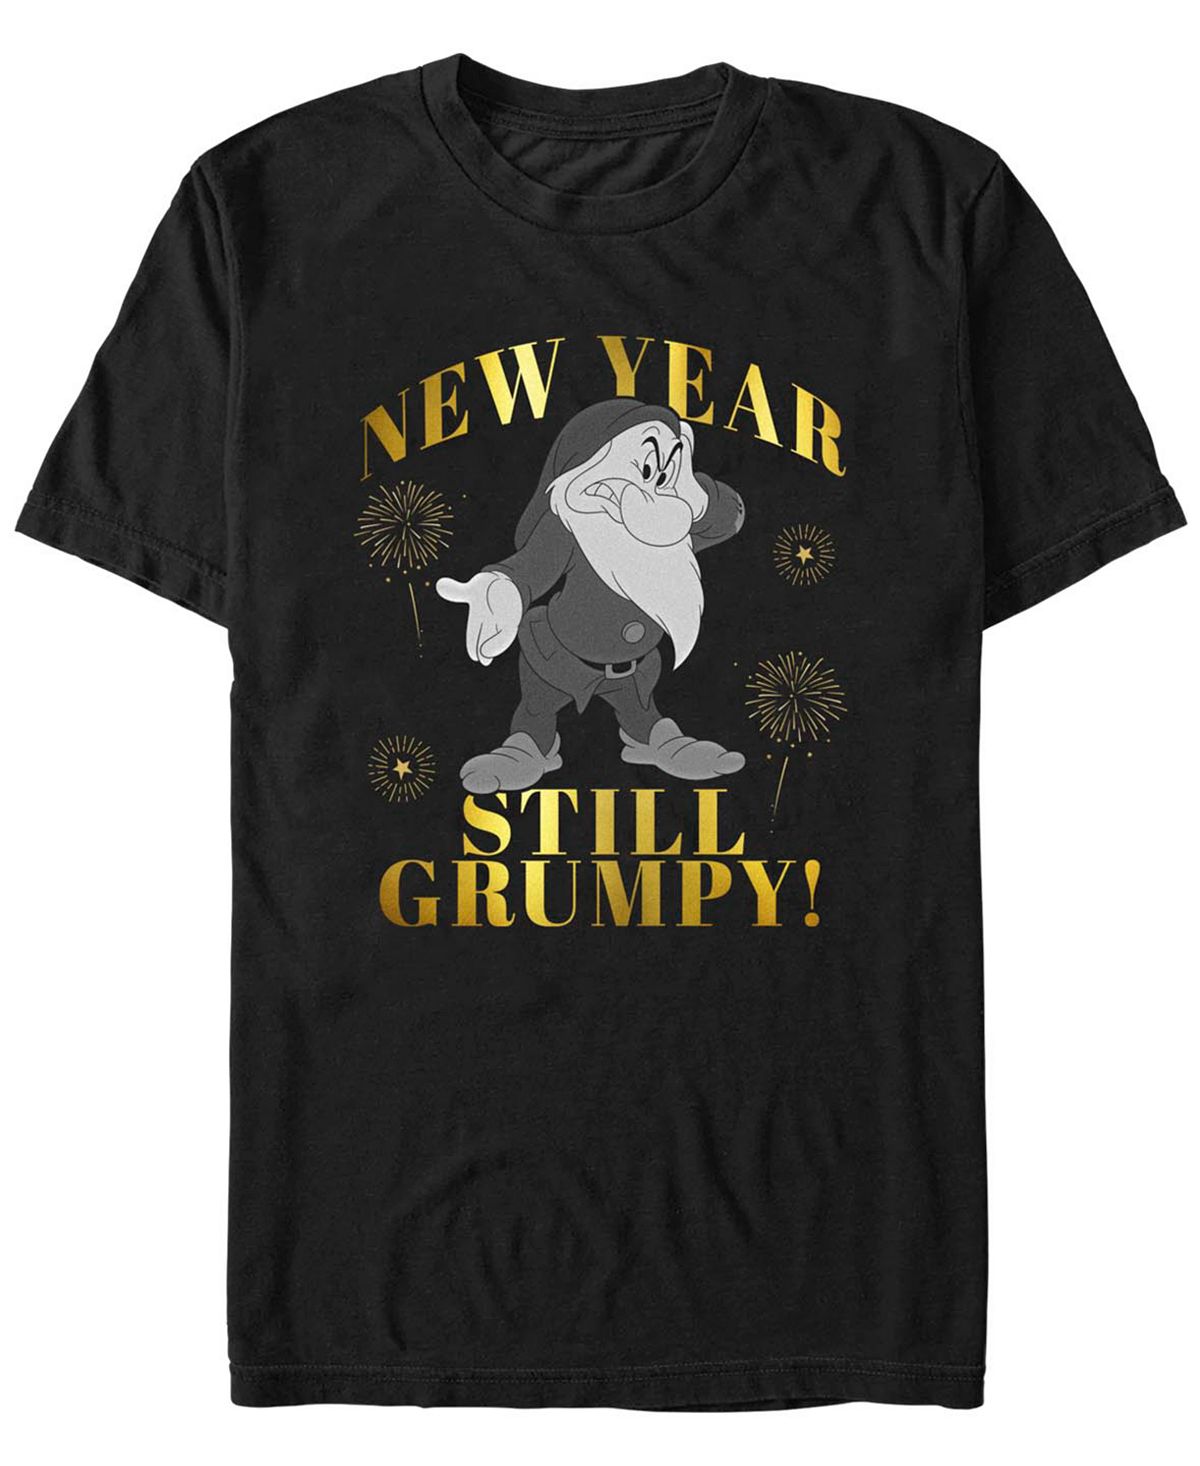 Мужская футболка с короткими рукавами disney princess new year still grumpy Fifth Sun, черный